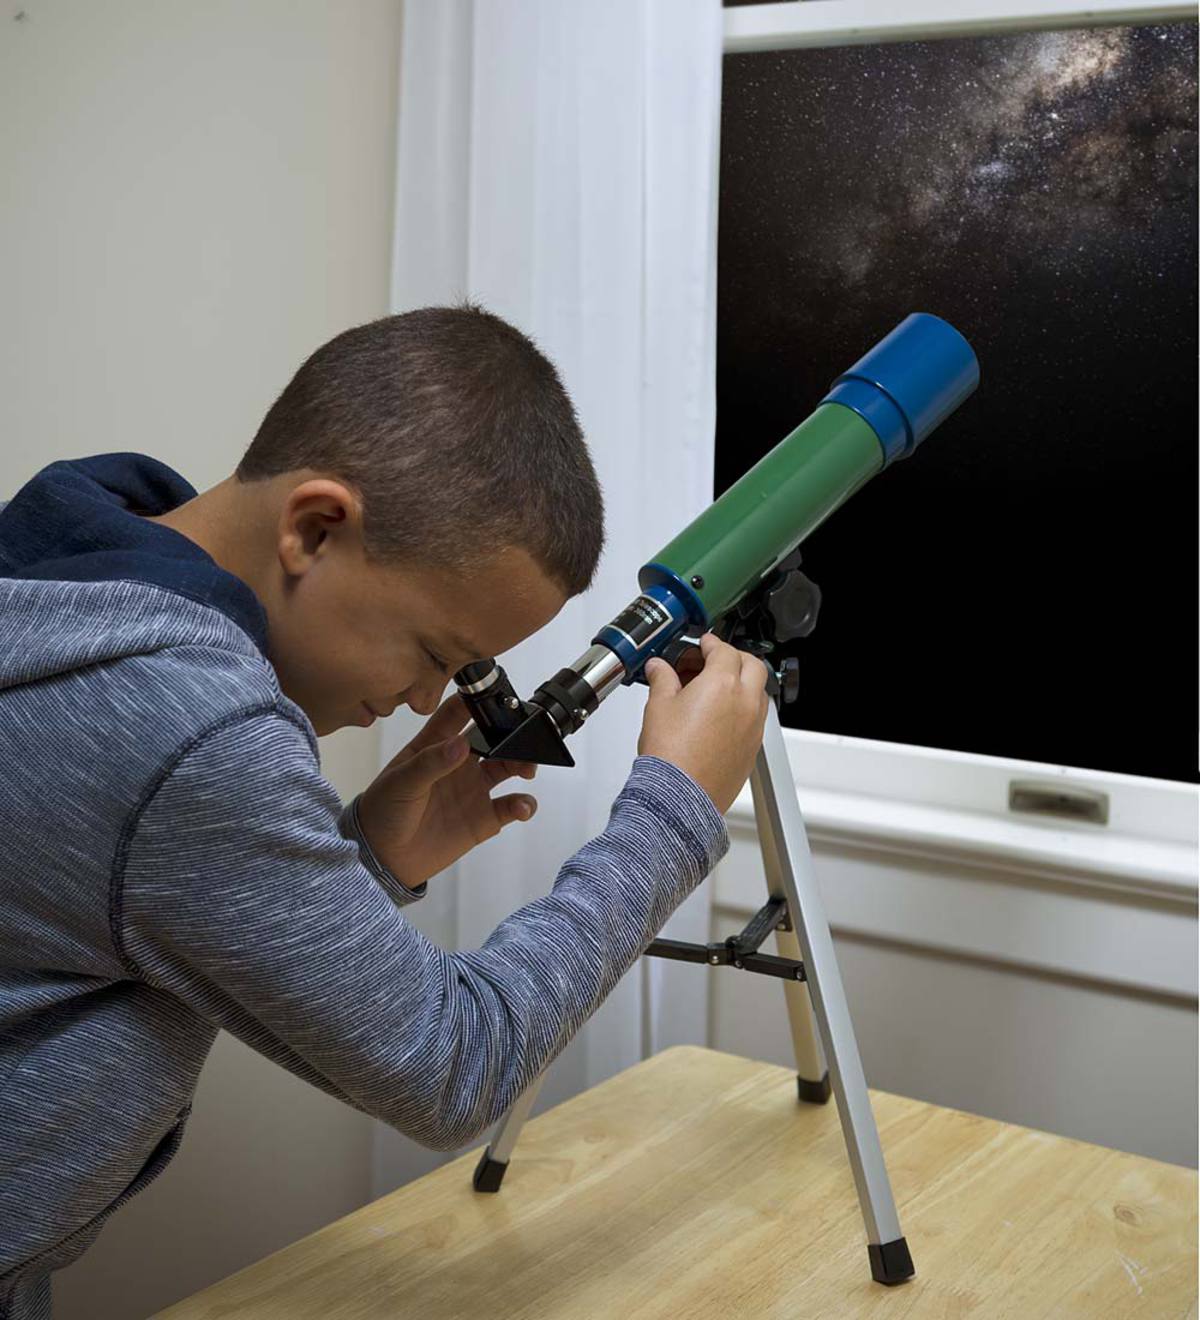 Children's Starter Telescope